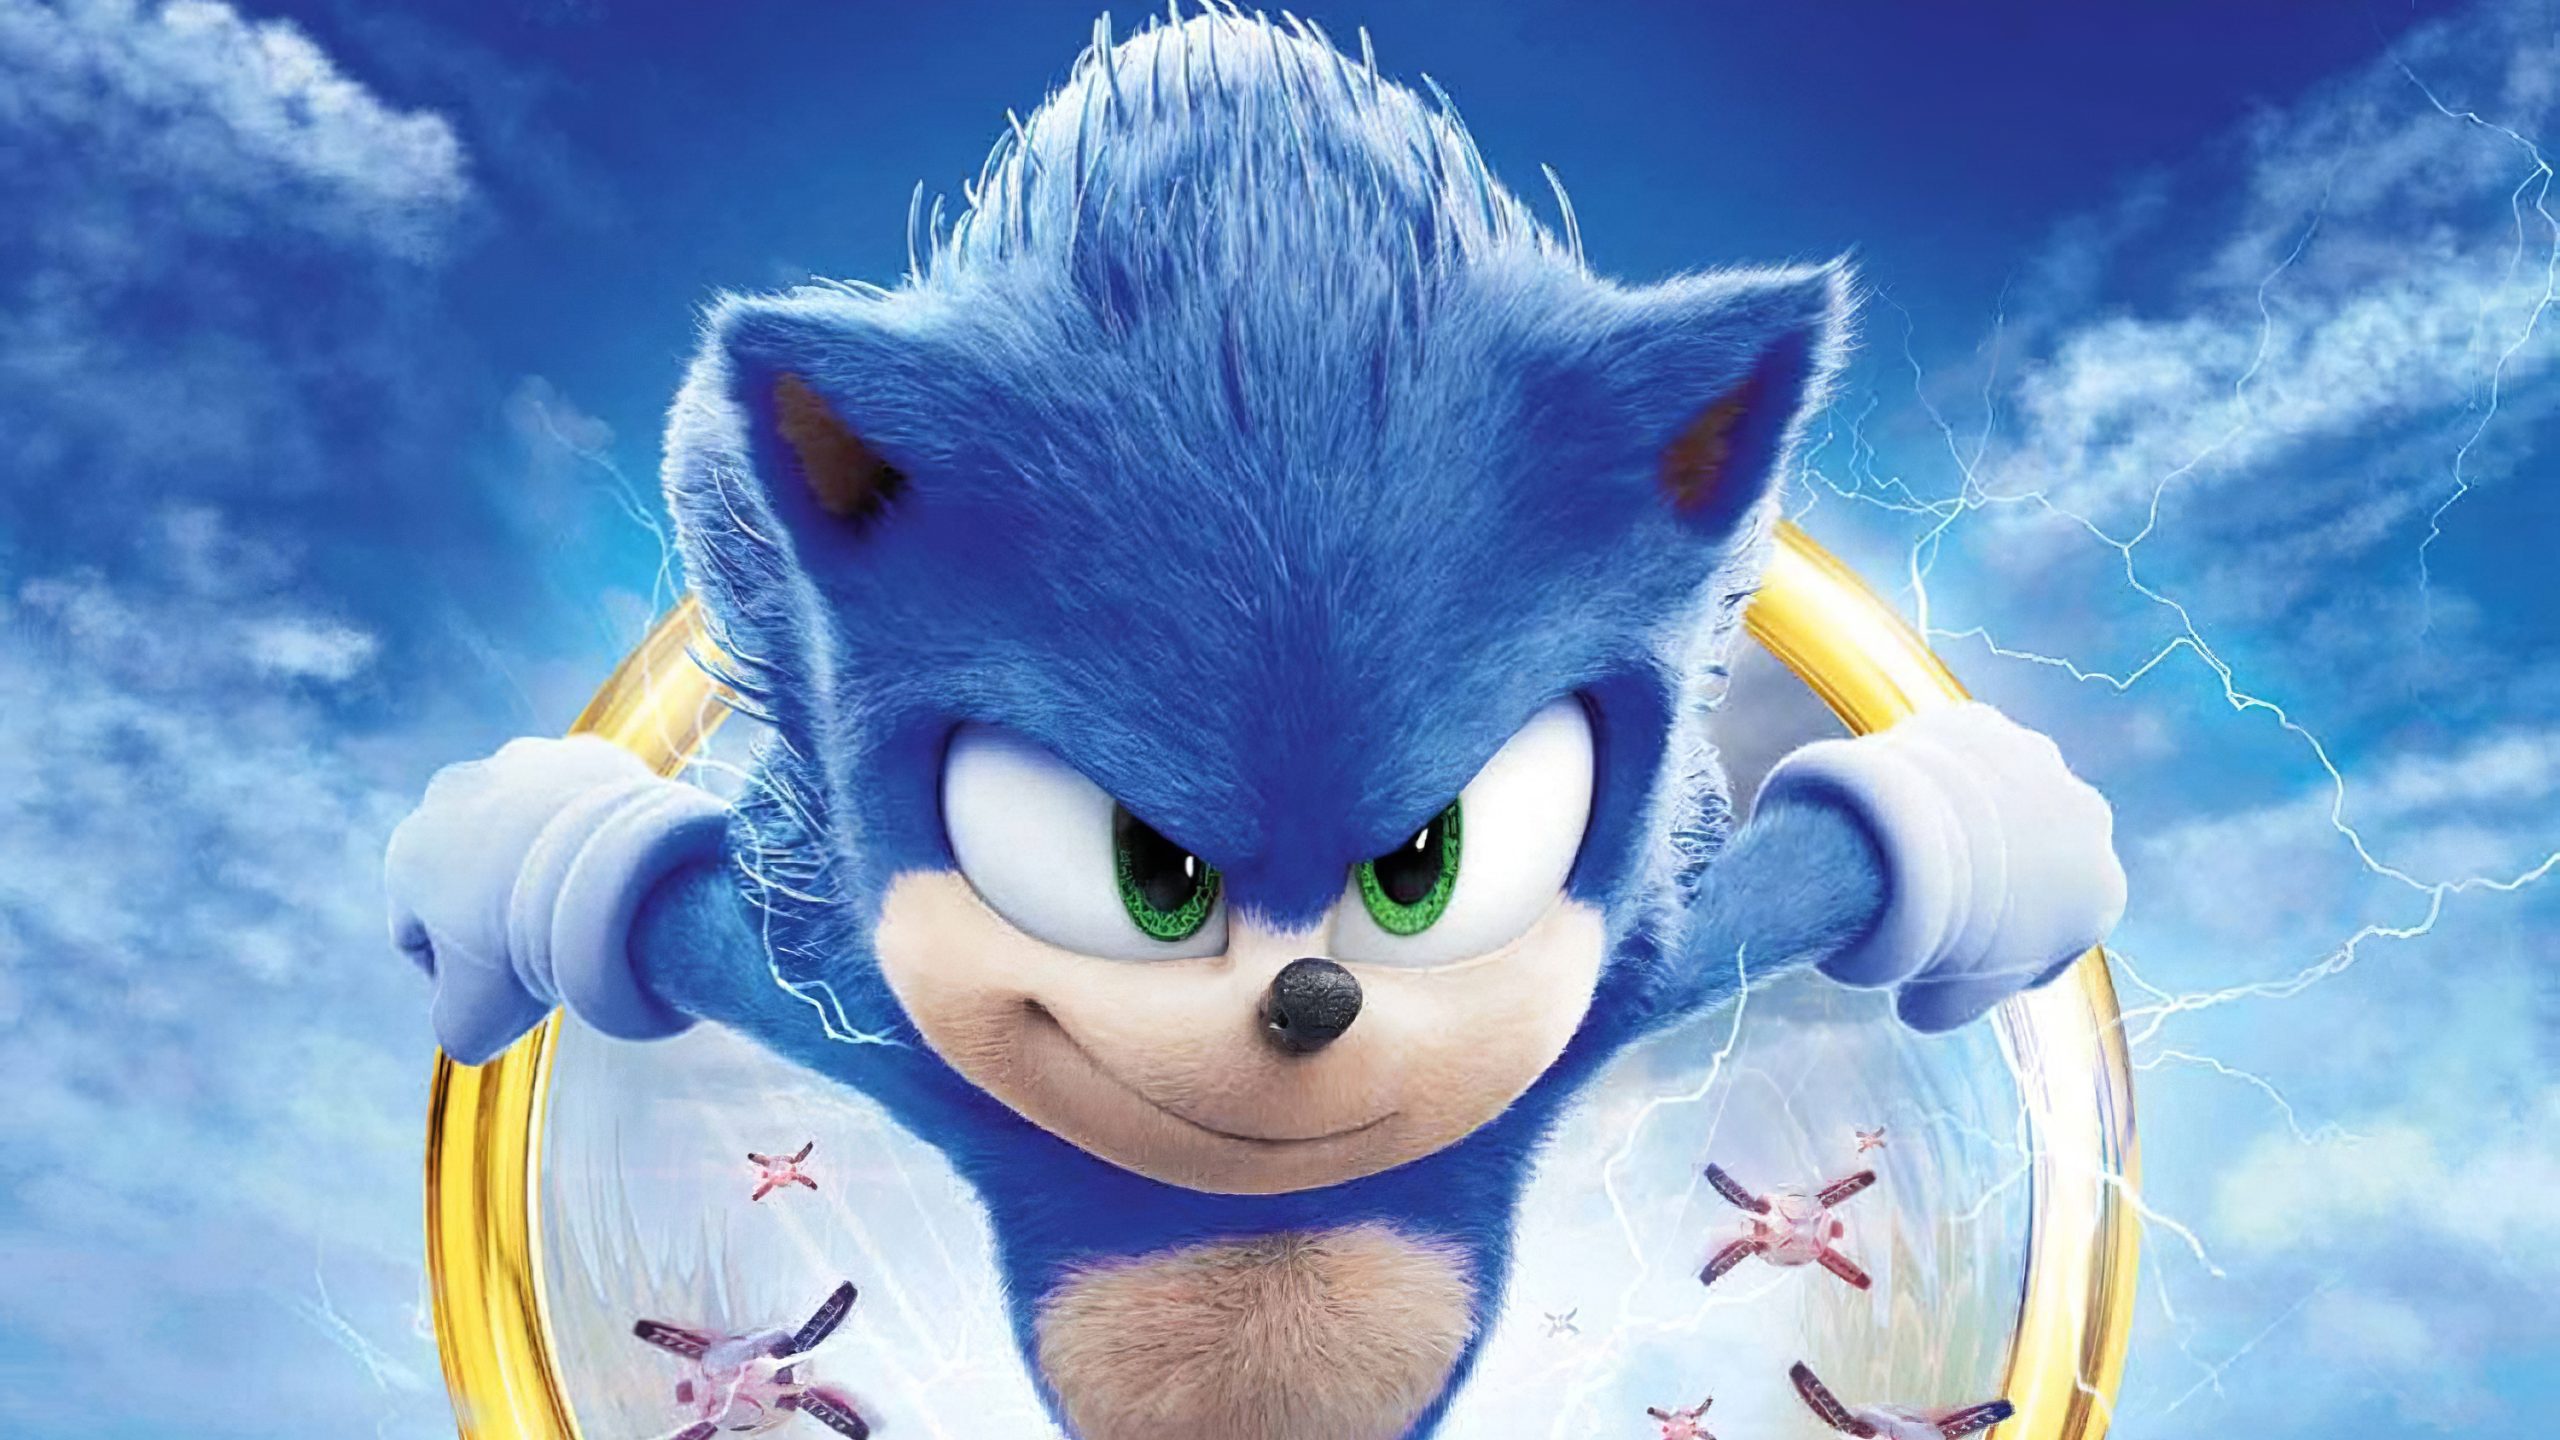 Sonic 2 está a caminho - Em Breve - My Family Cinema